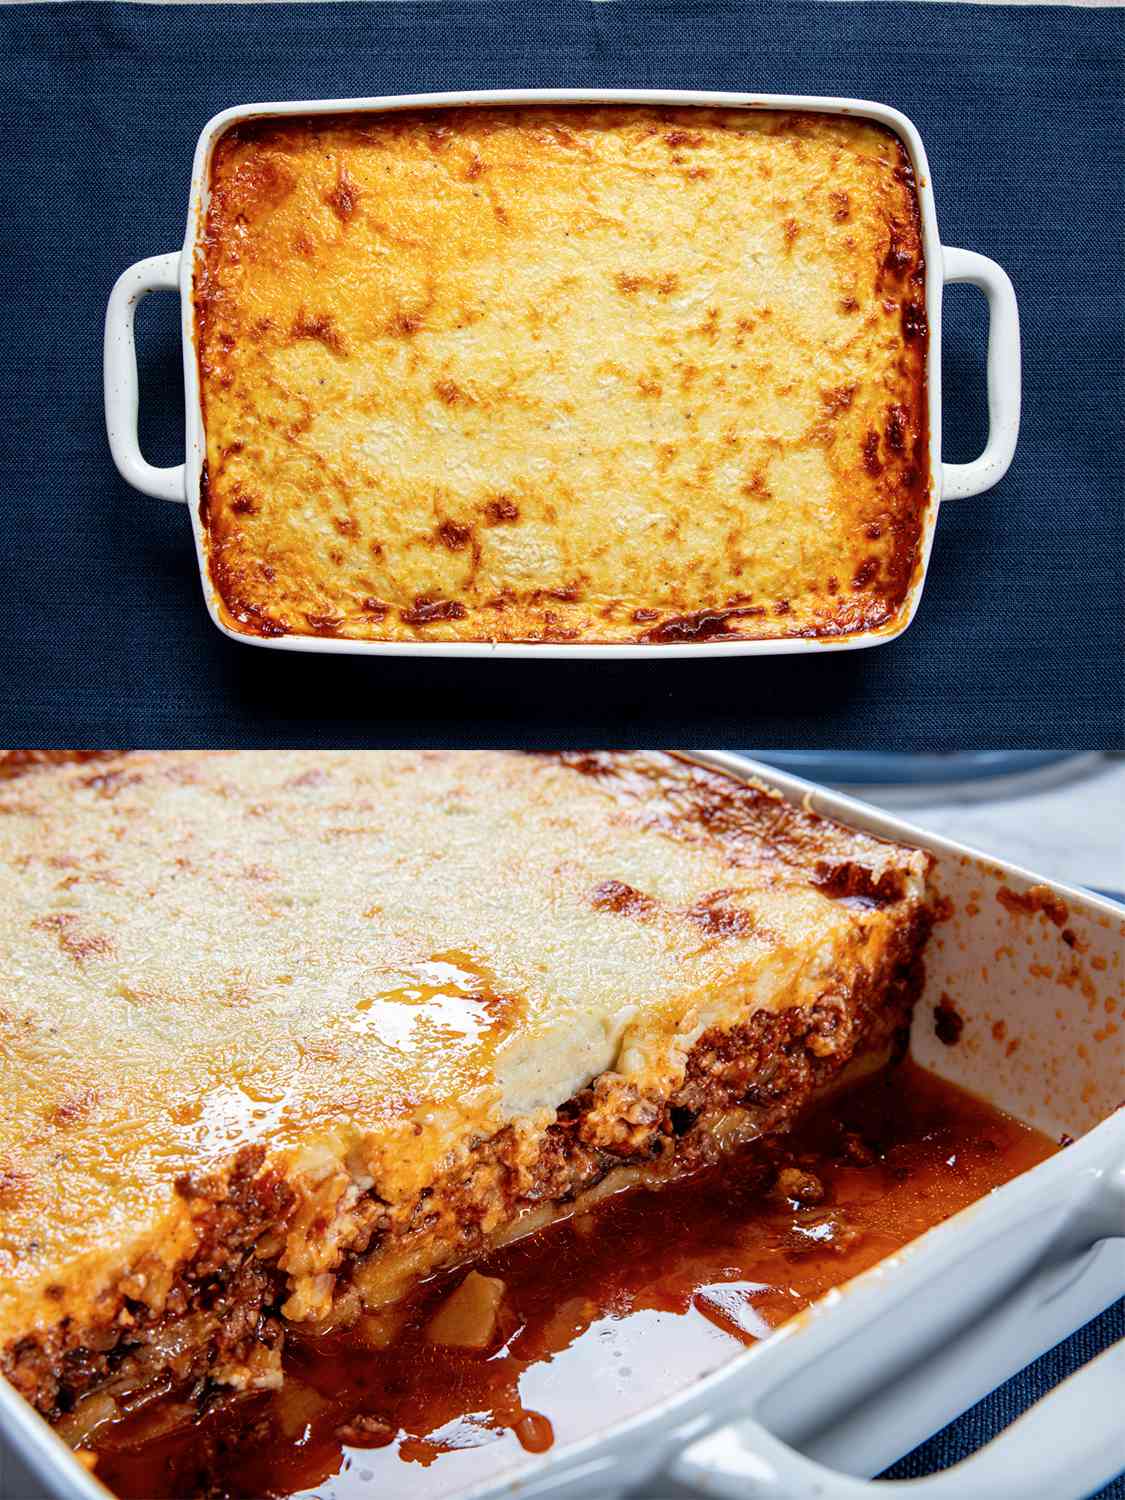 两幅图像拼贴。顶部:蓝色背景的烤穆萨卡。下图:切好的穆萨卡的横截面视图，显示了锅中的层次